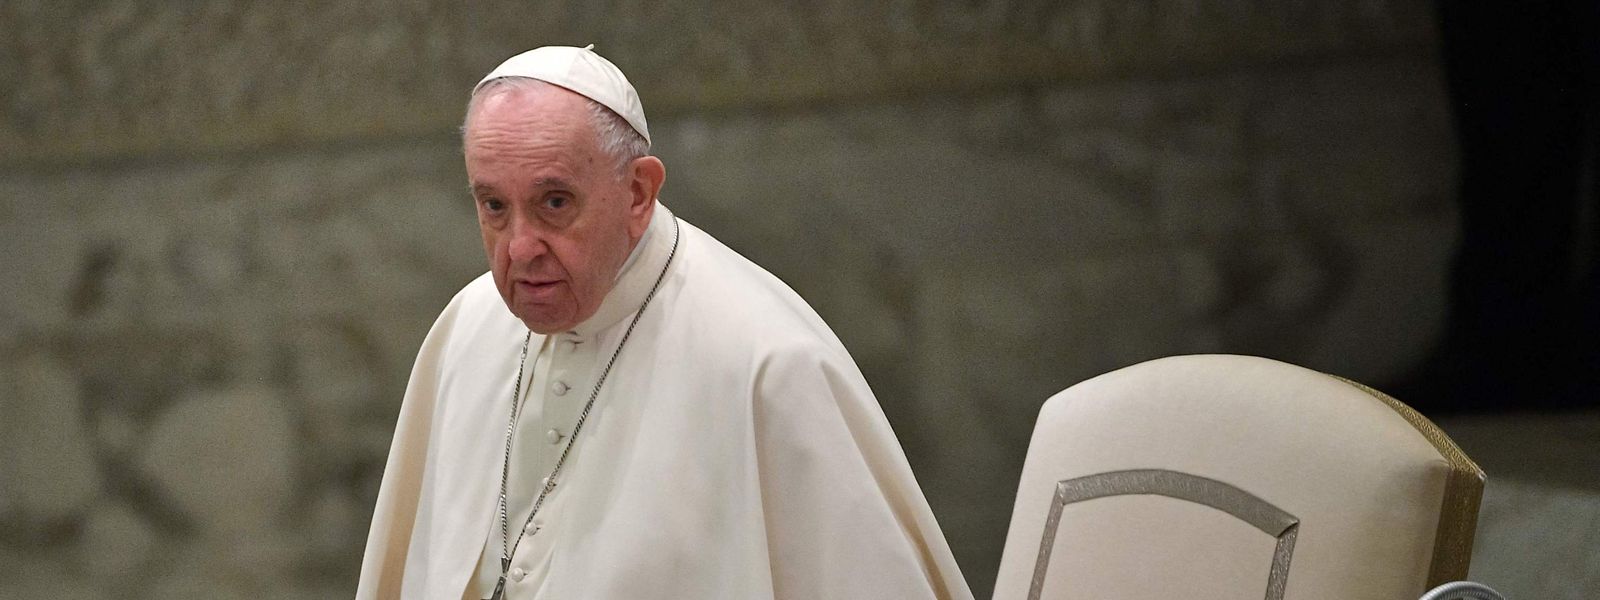 Papst Franziskus hat mit seiner Reform der römischen Kurie die Tür für Frauen in Führungspositionen der Kirche weiter aufgestoßen.